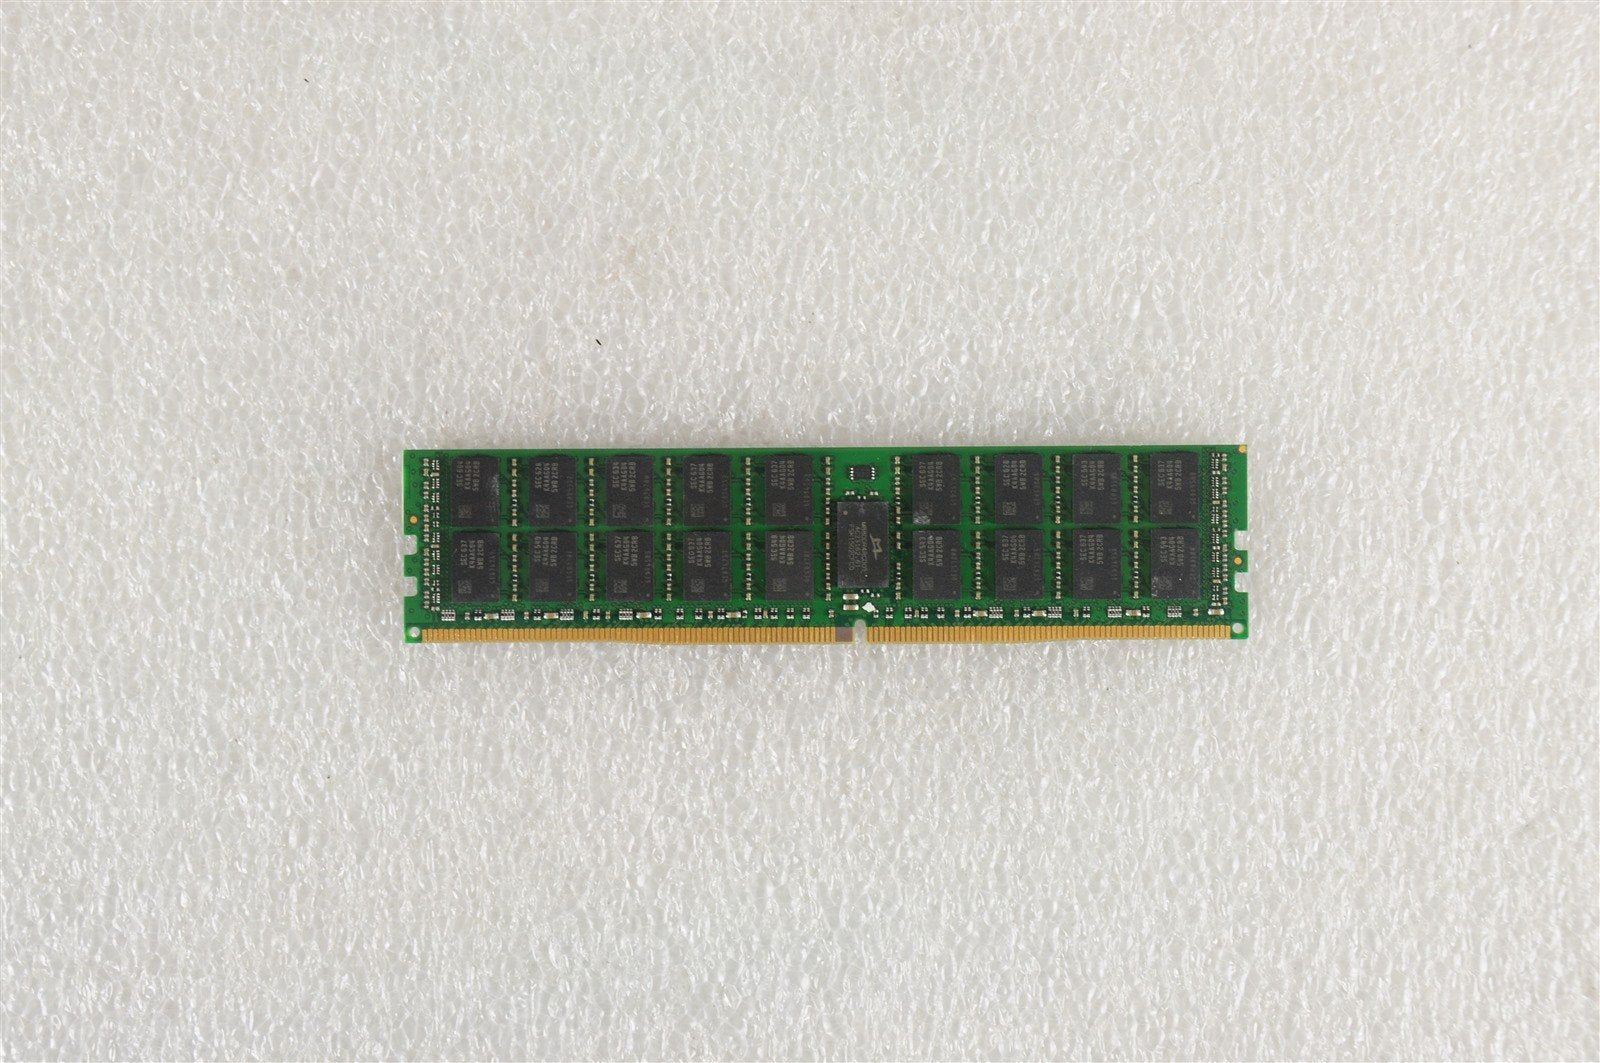 OWC2400D4MPE64G OWC 64GB 2RX4 PC4-2400T DDR4 MEMORY MODULE (1x64GB)